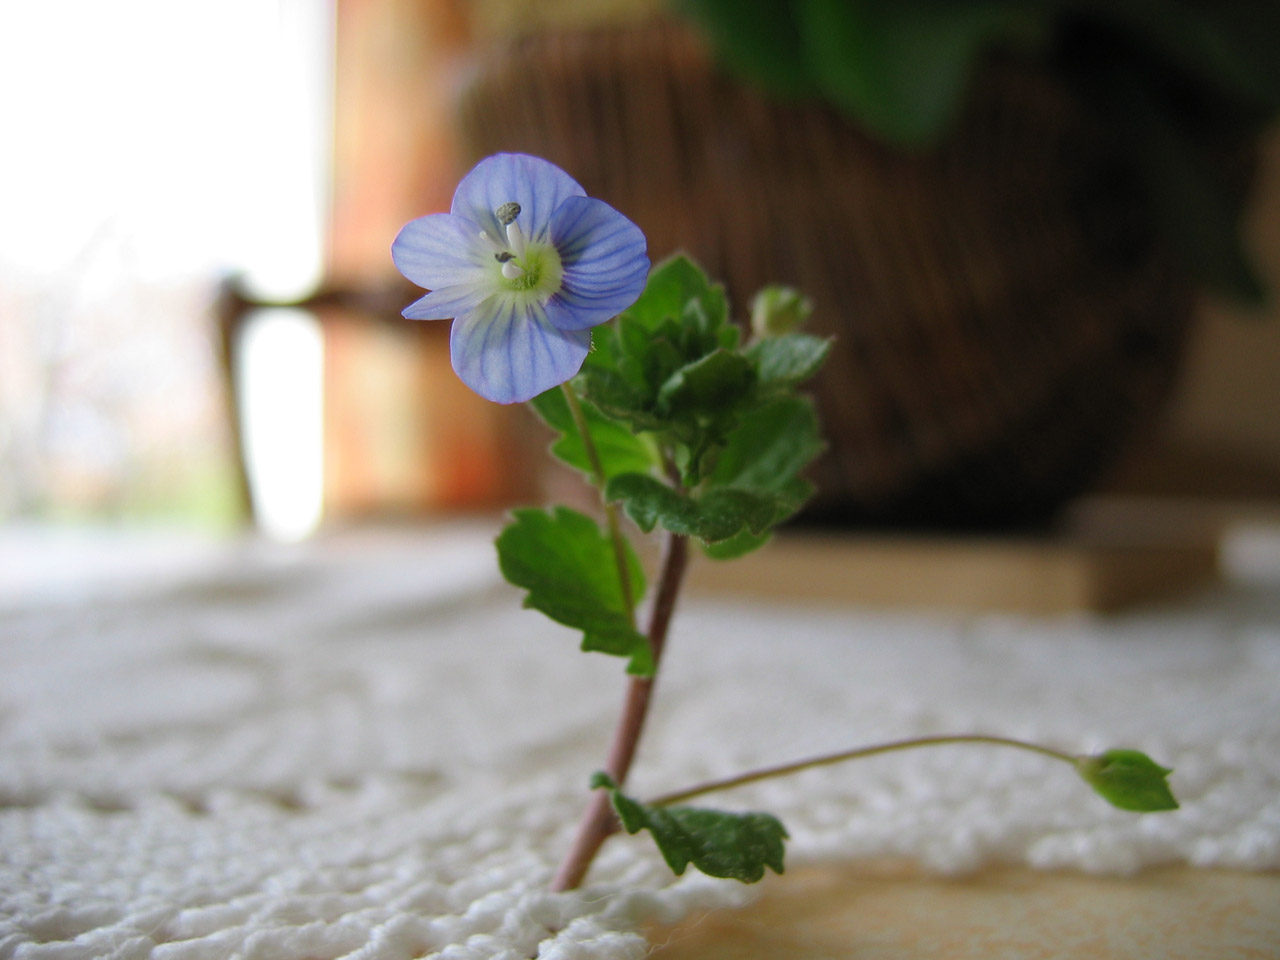 Une photo d'une très jolie petite(environ 5mm de diamètre) fleur bleue sur un napperon avec un panier fleurie en arrière plan très flou